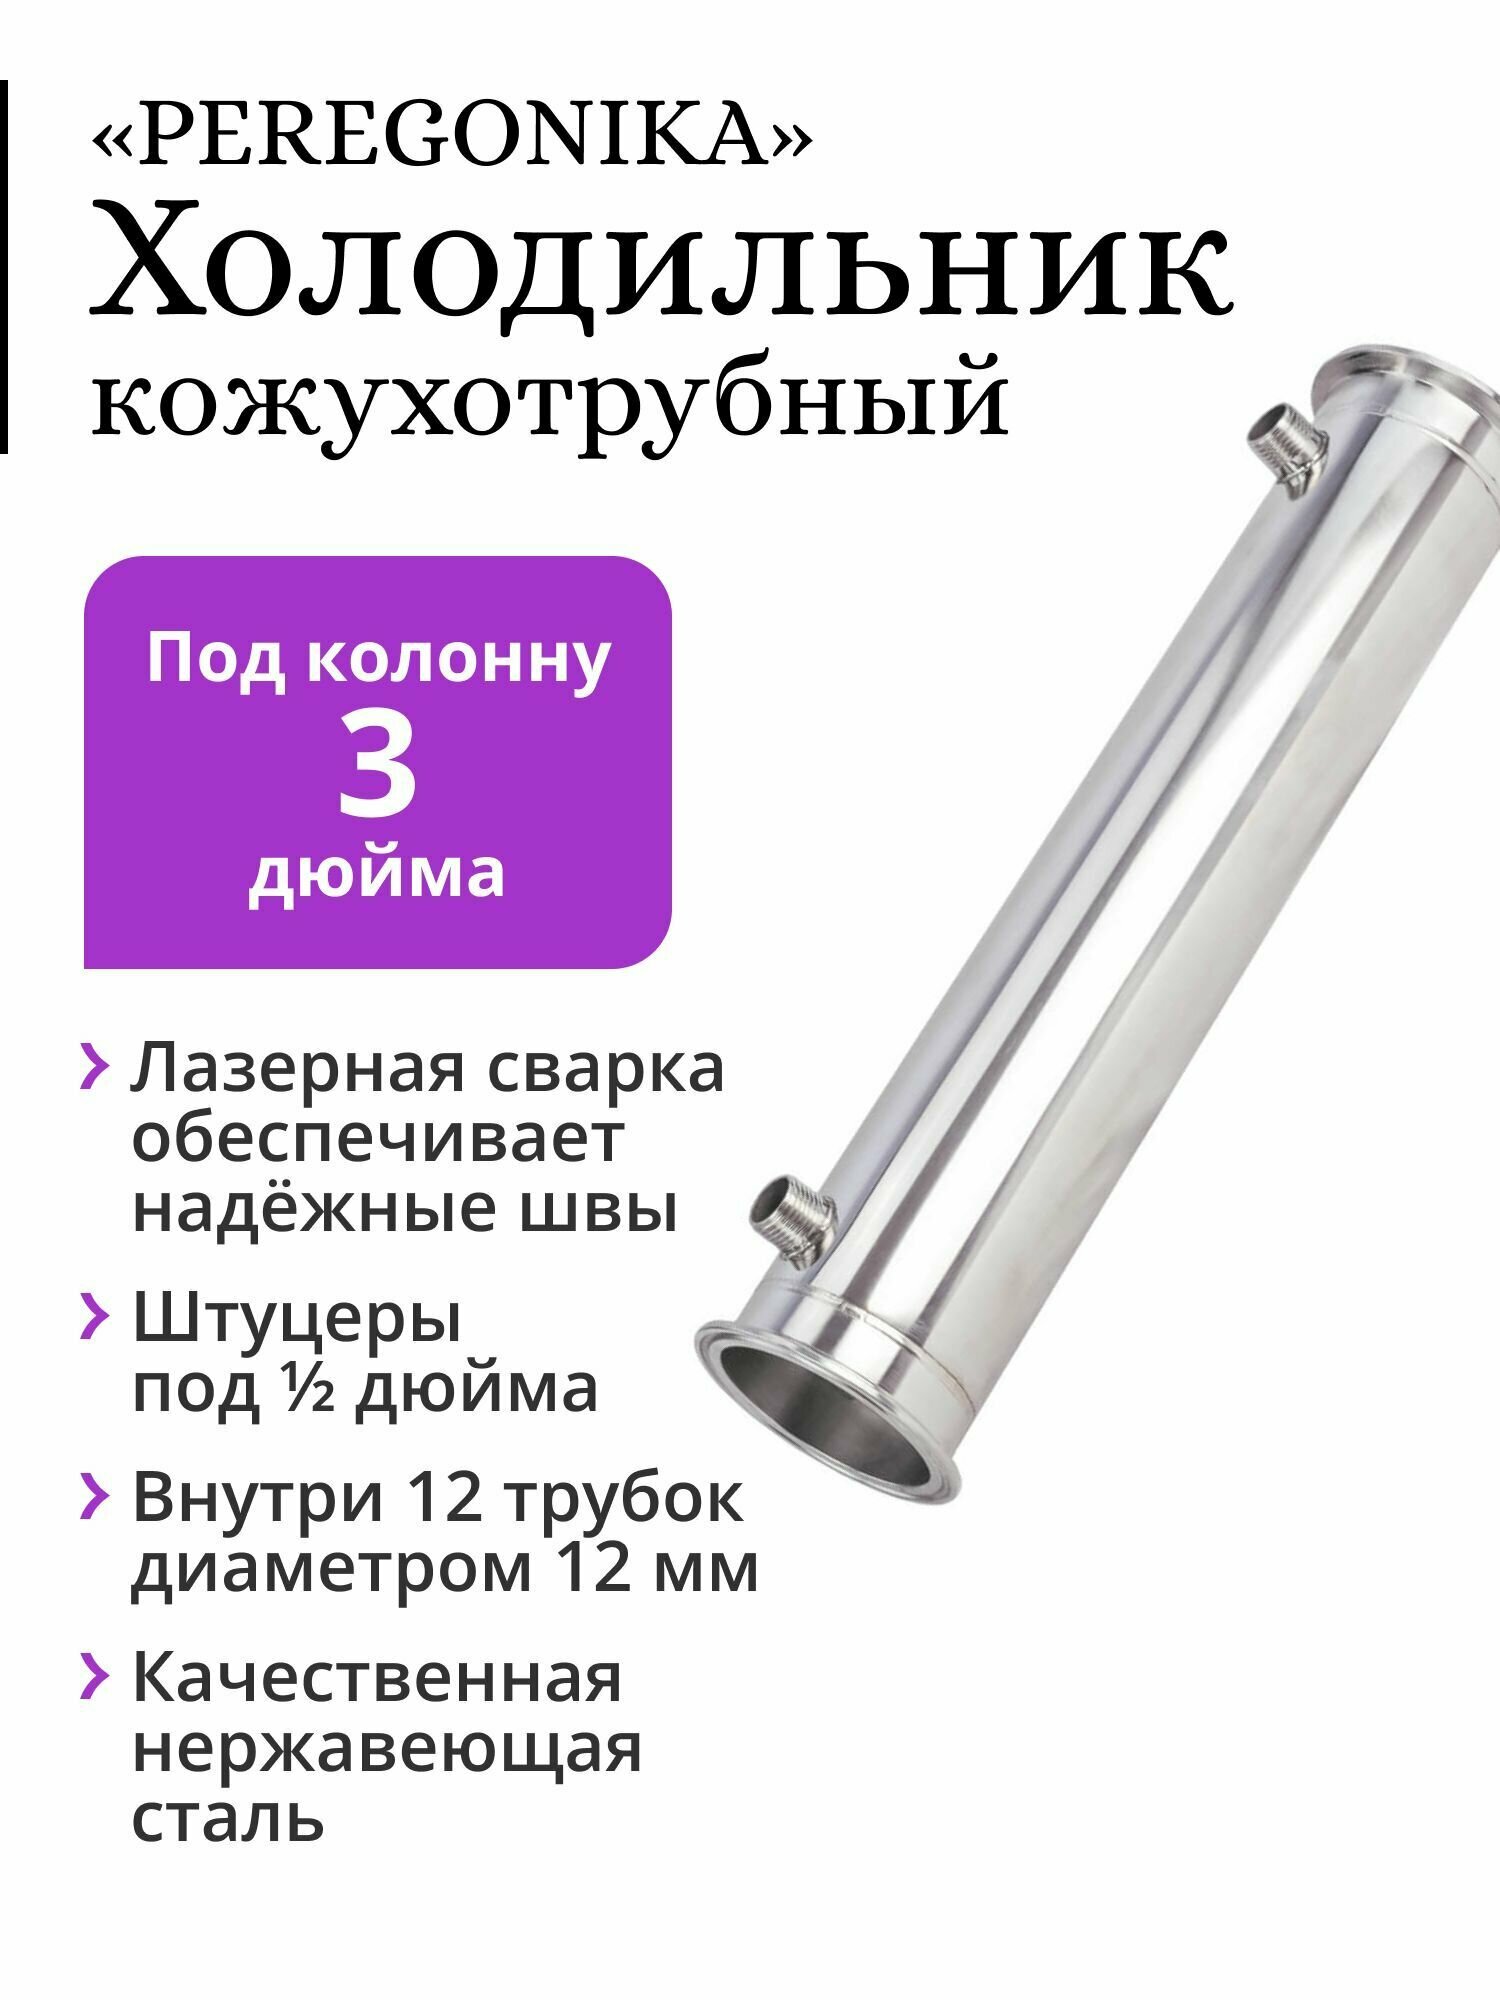 Холодильник PEREGONIKA кожухотрубный для колонны 3 дюйма трубки 12х12 мм